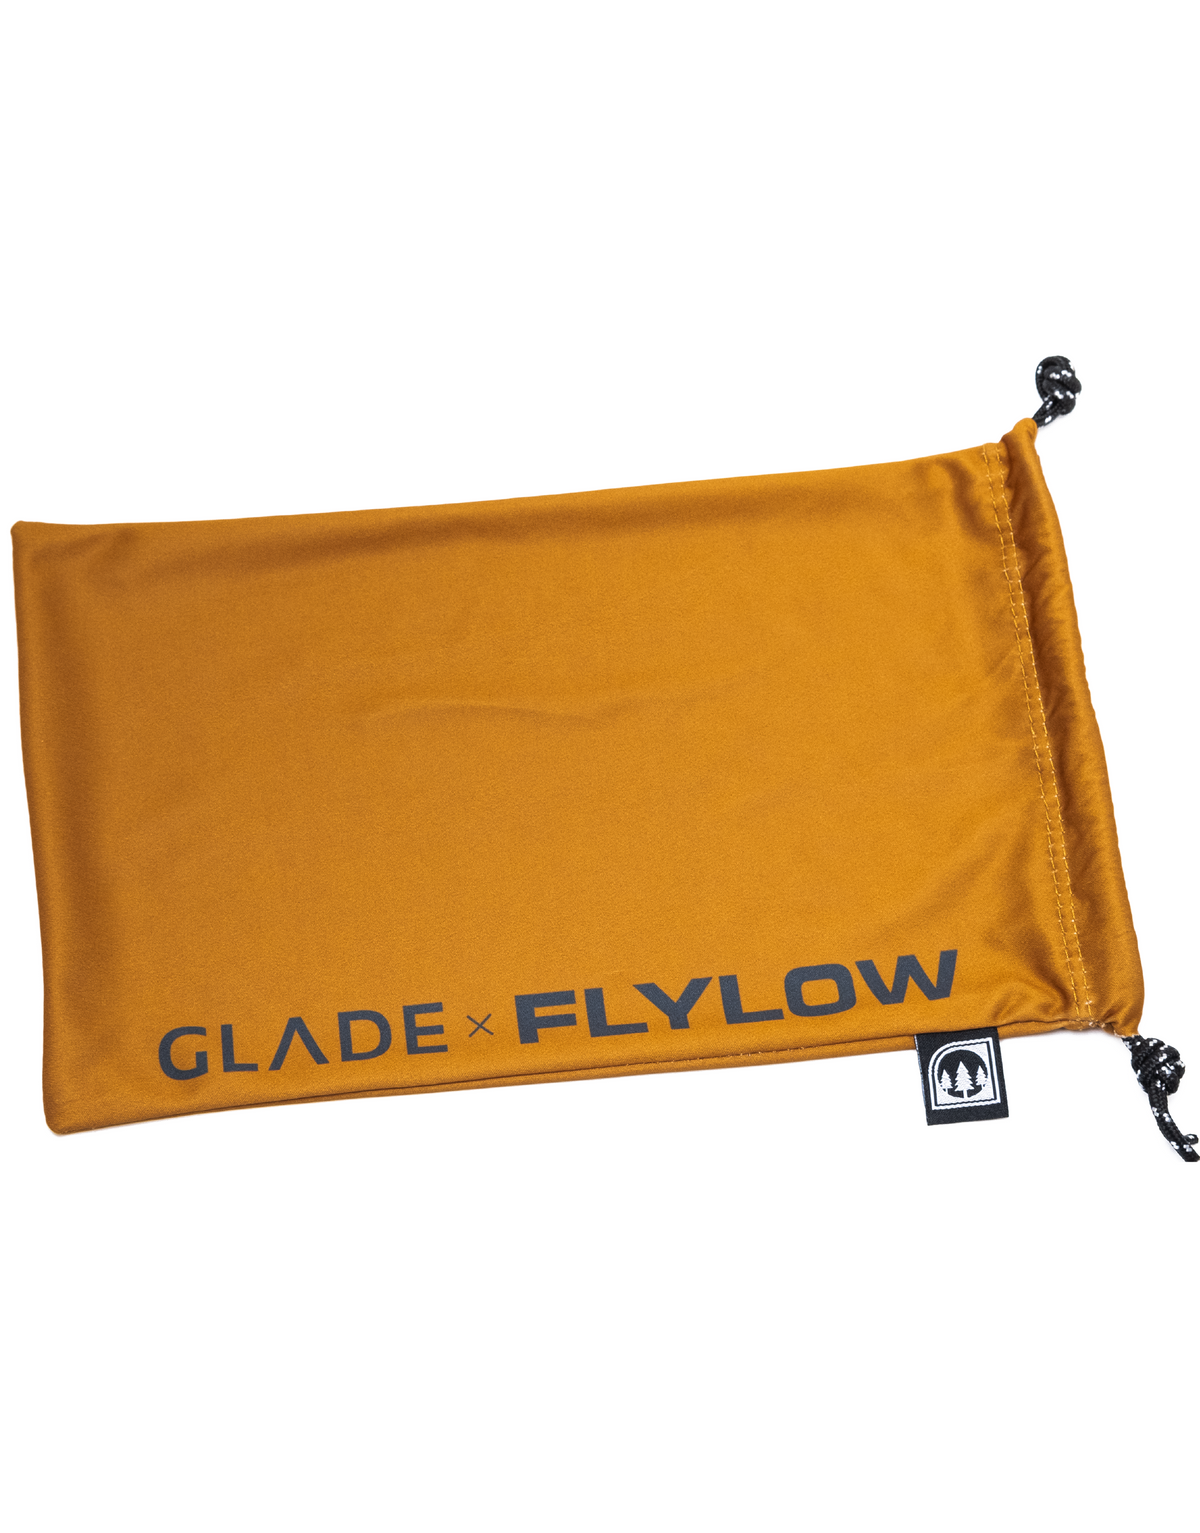 Glade x Flylow Adapt 2 with Custom Hardshell Case